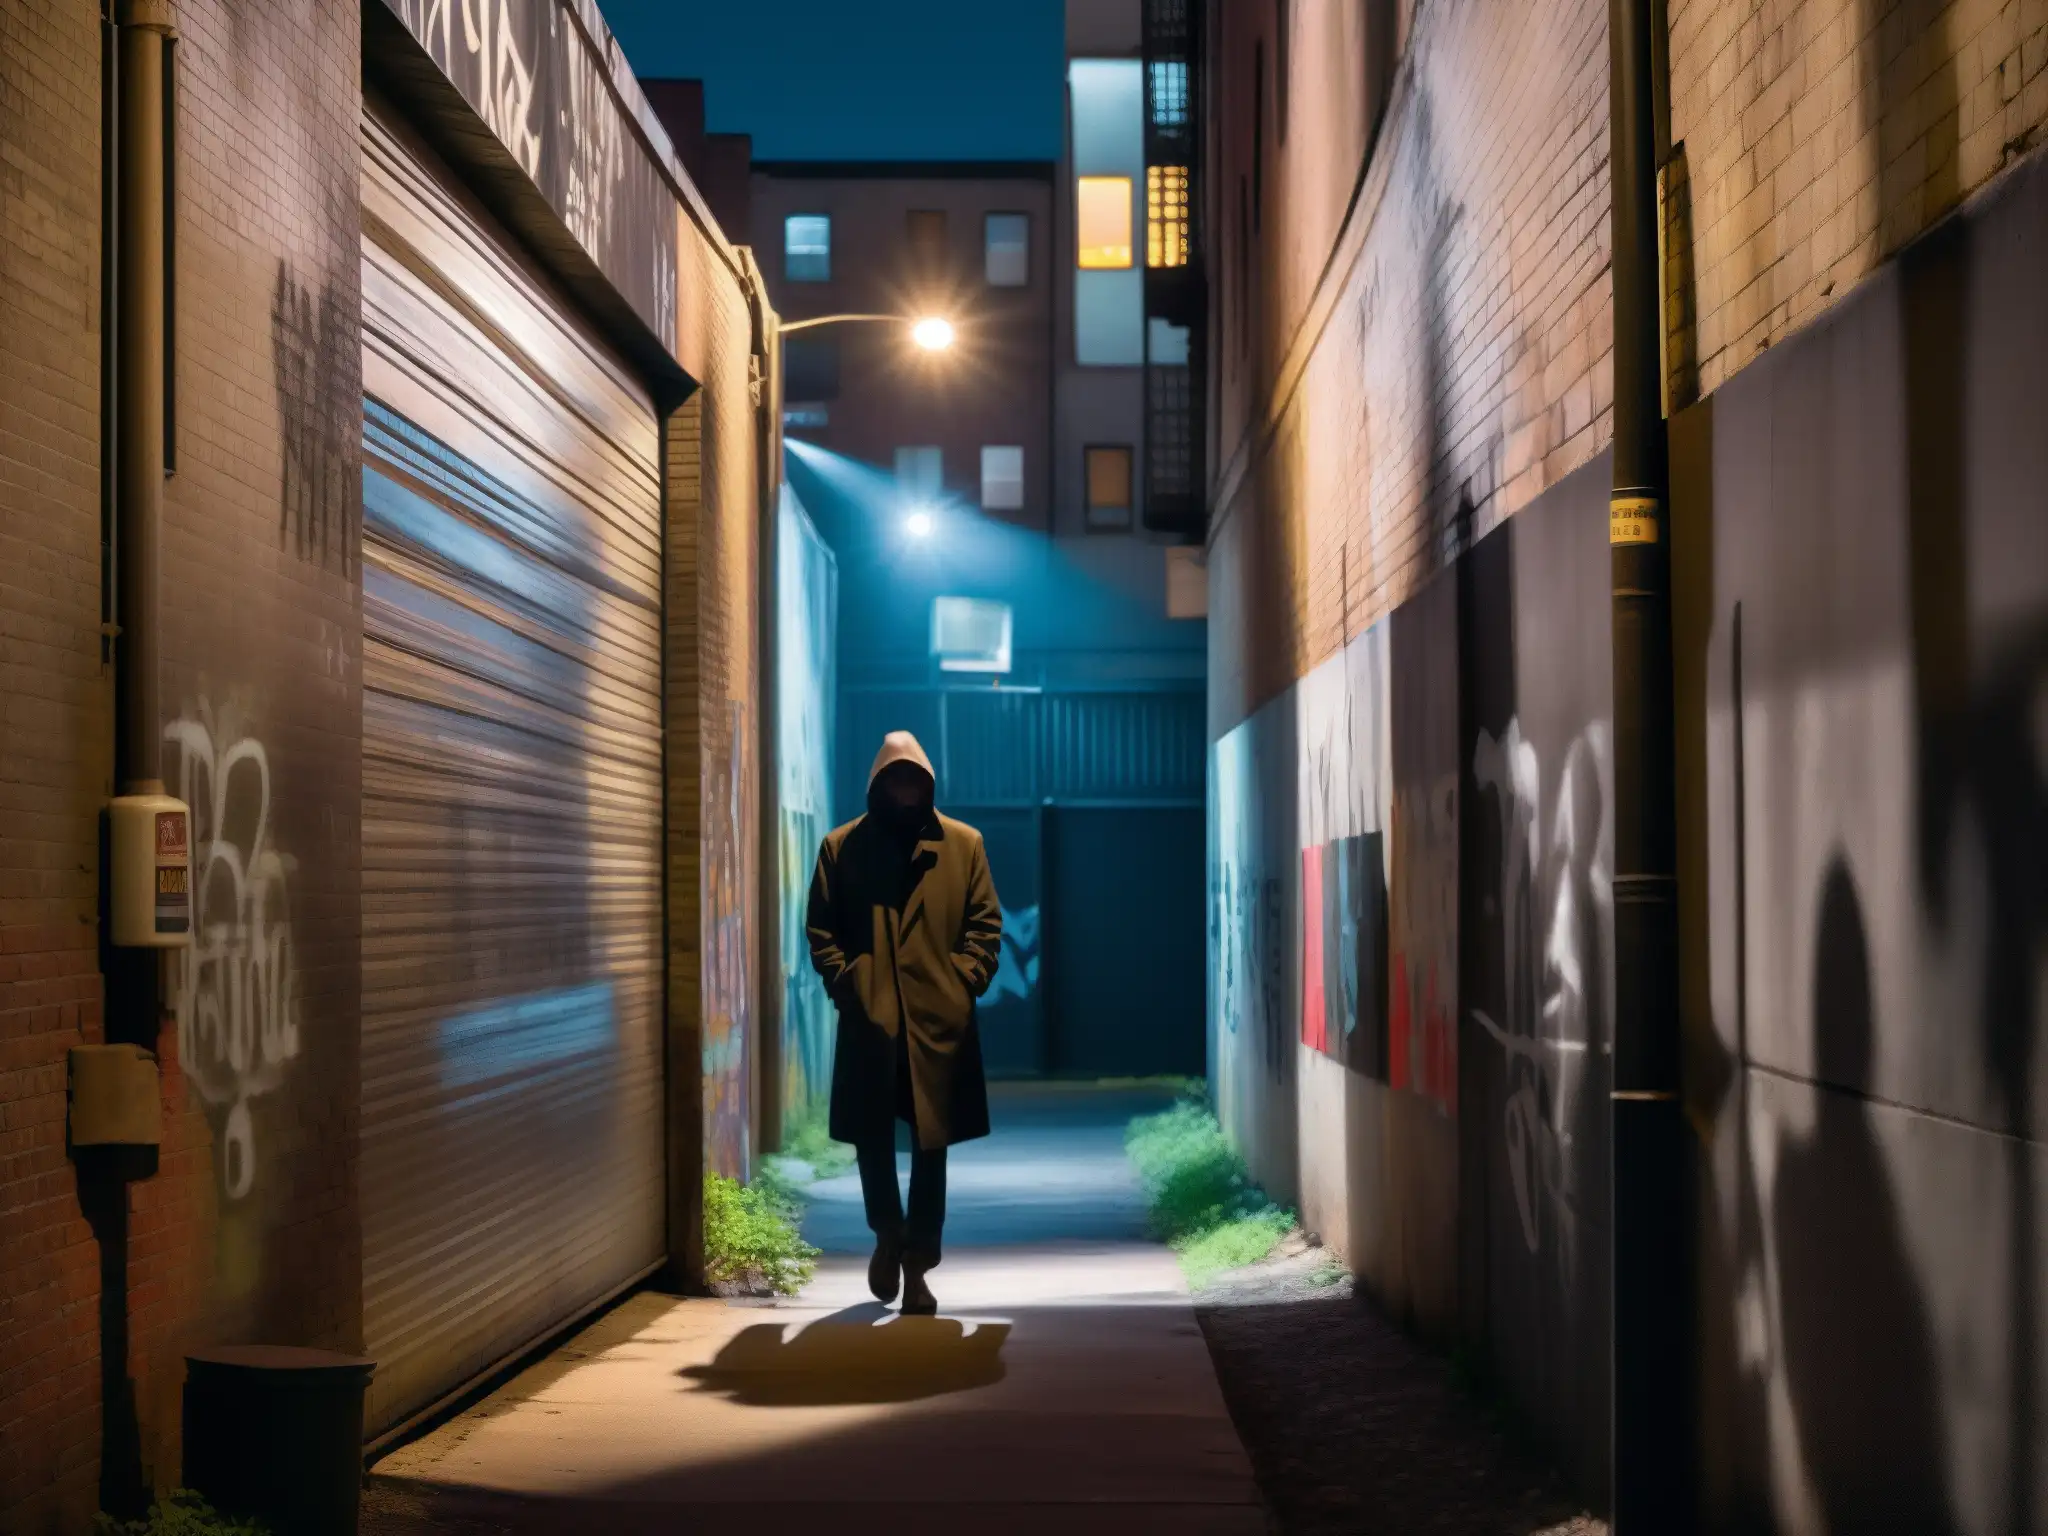 Alley nocturno con graffiti, figura en sombras, ambiente misterioso y urbano